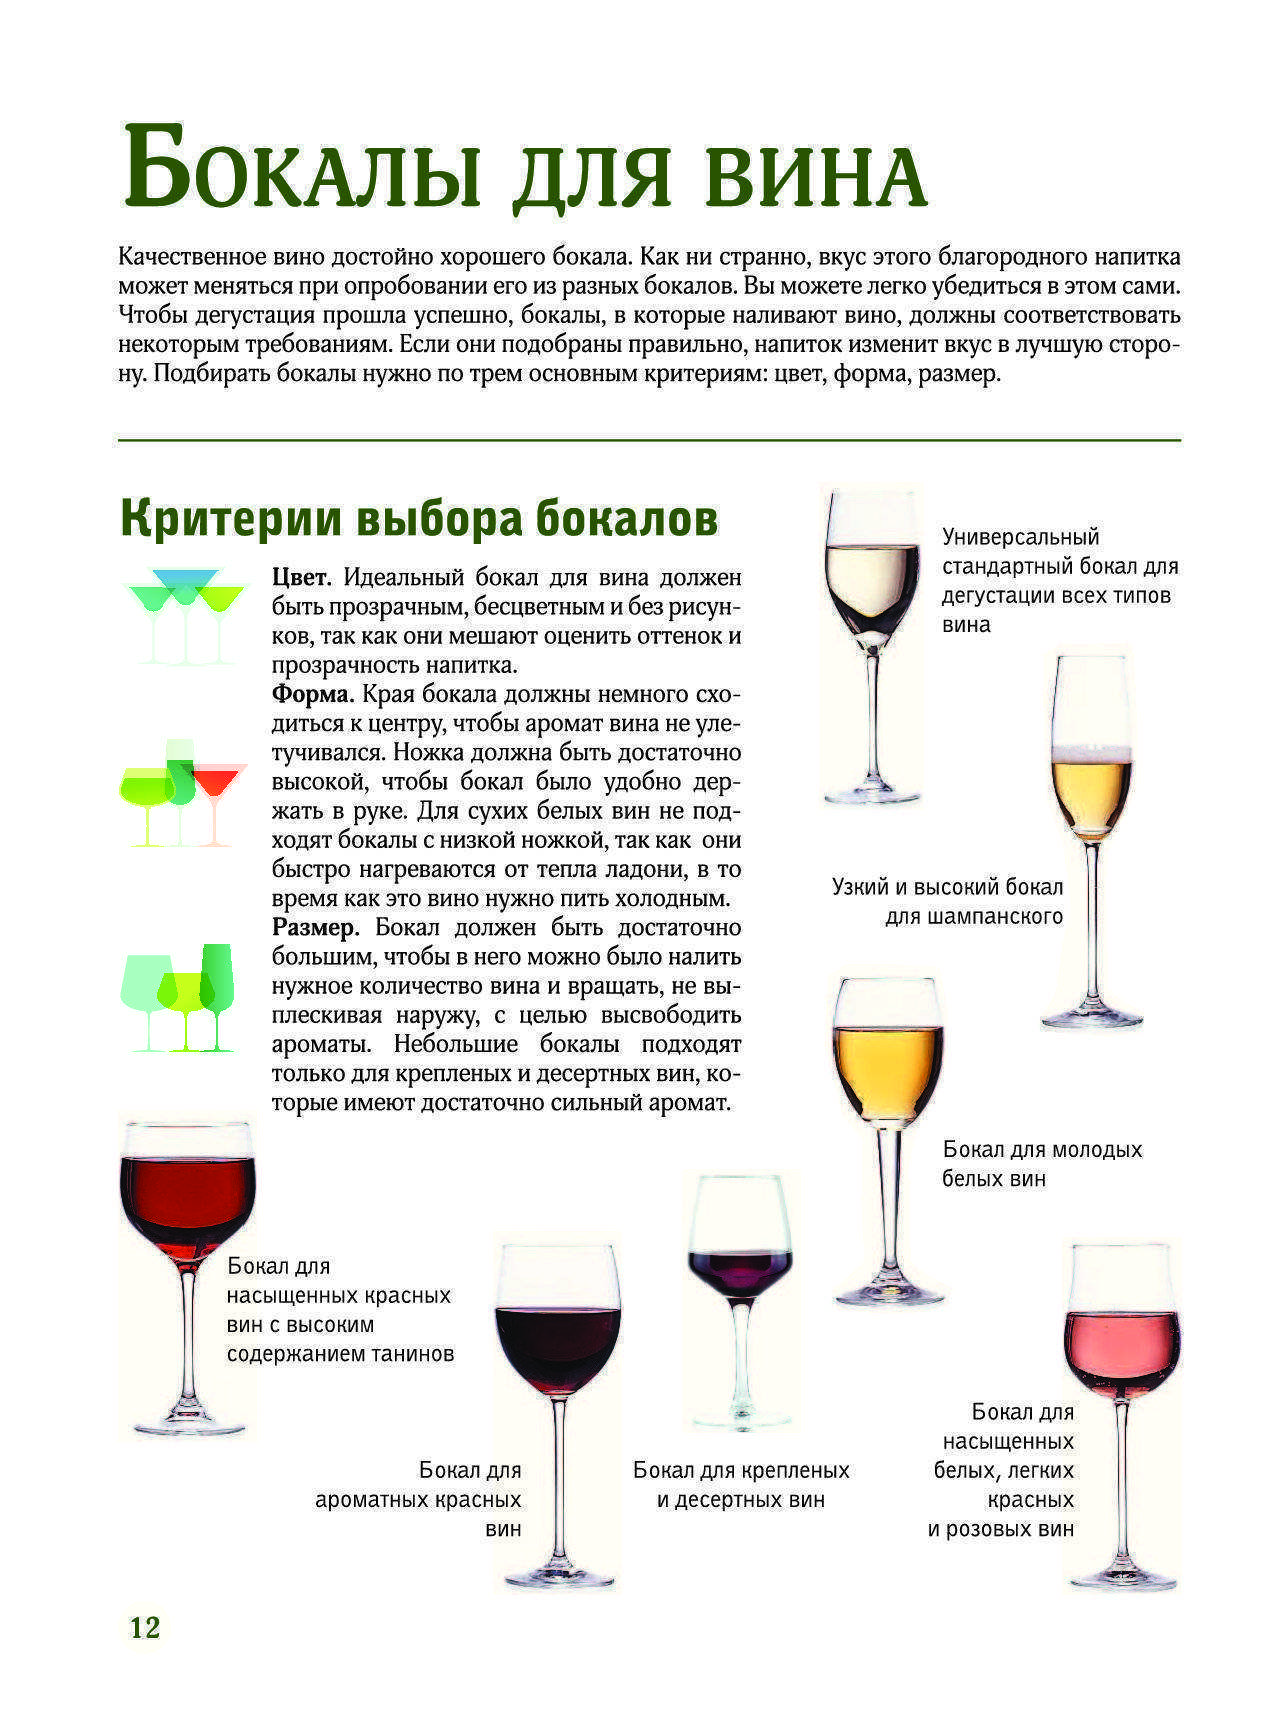 Тайна цвета: какое вино полезнее – белое или красное